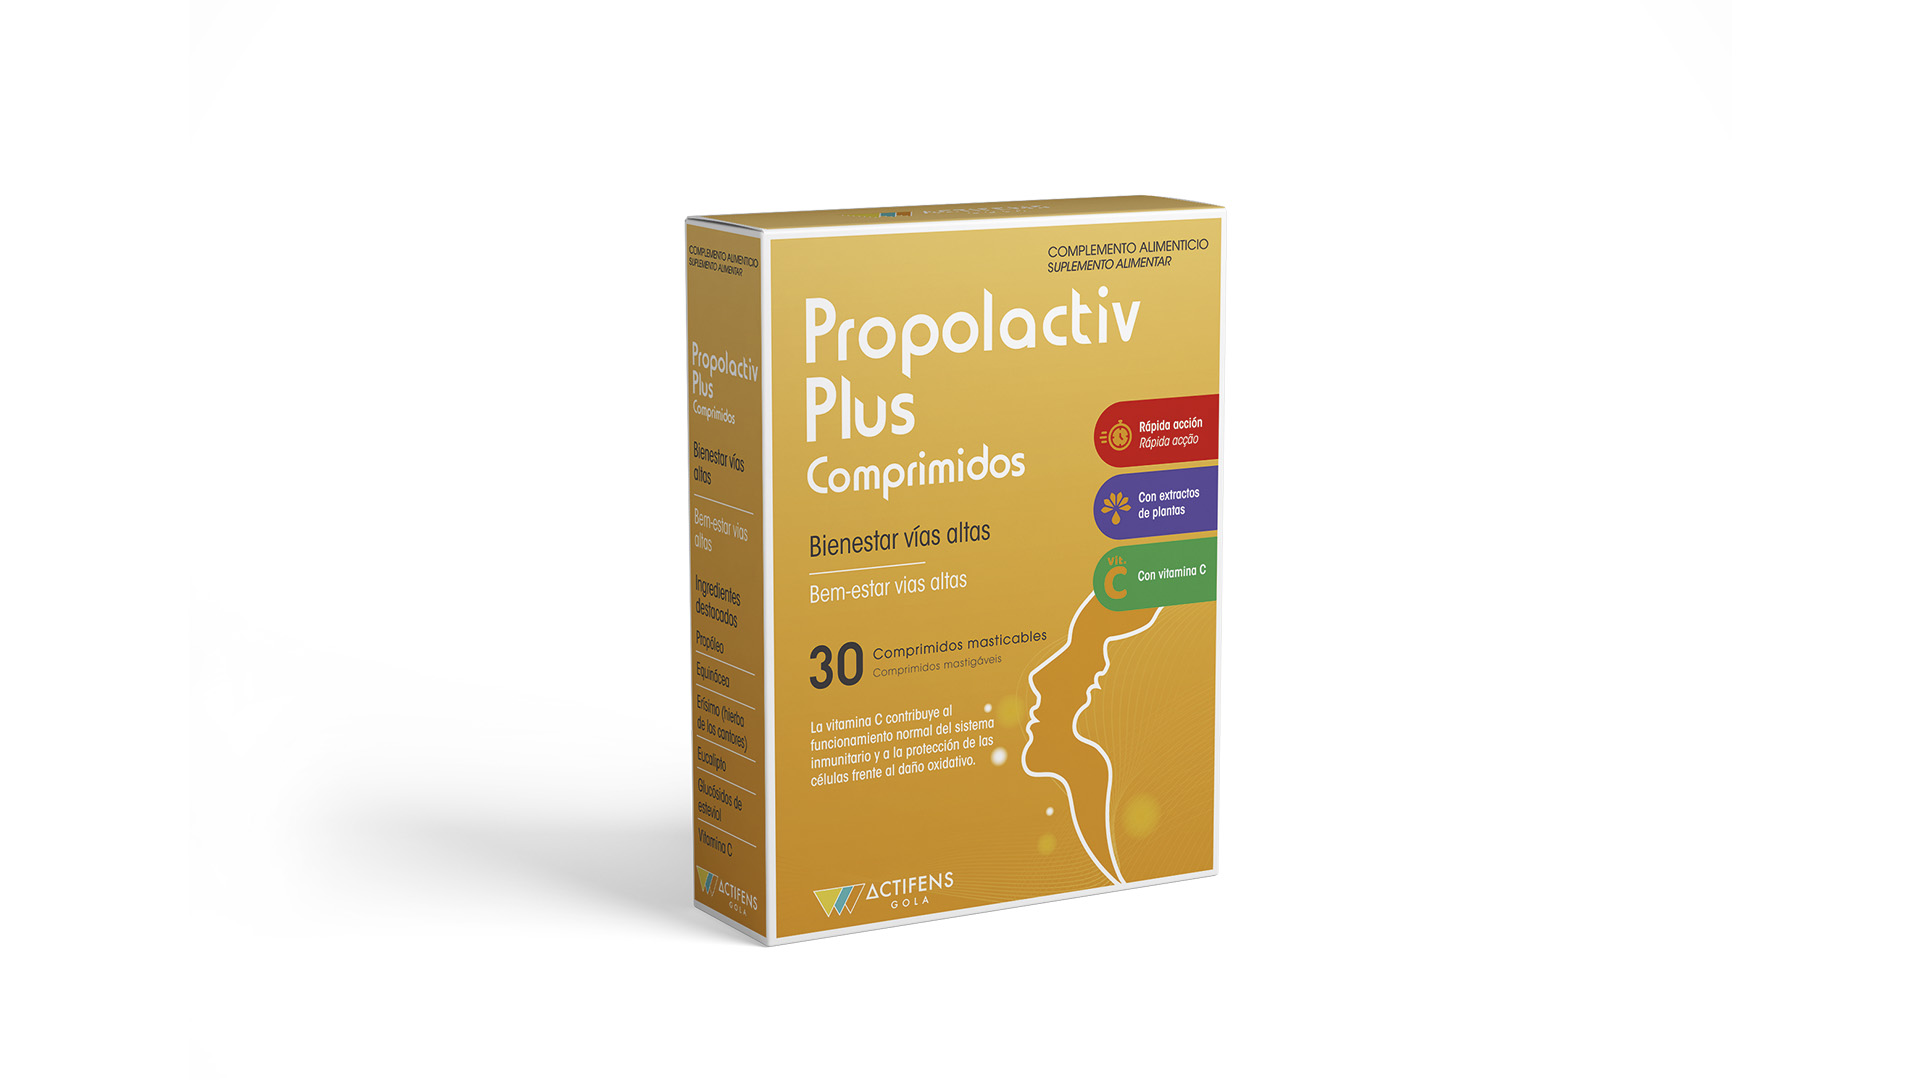 Propolactiv plus comprimidos